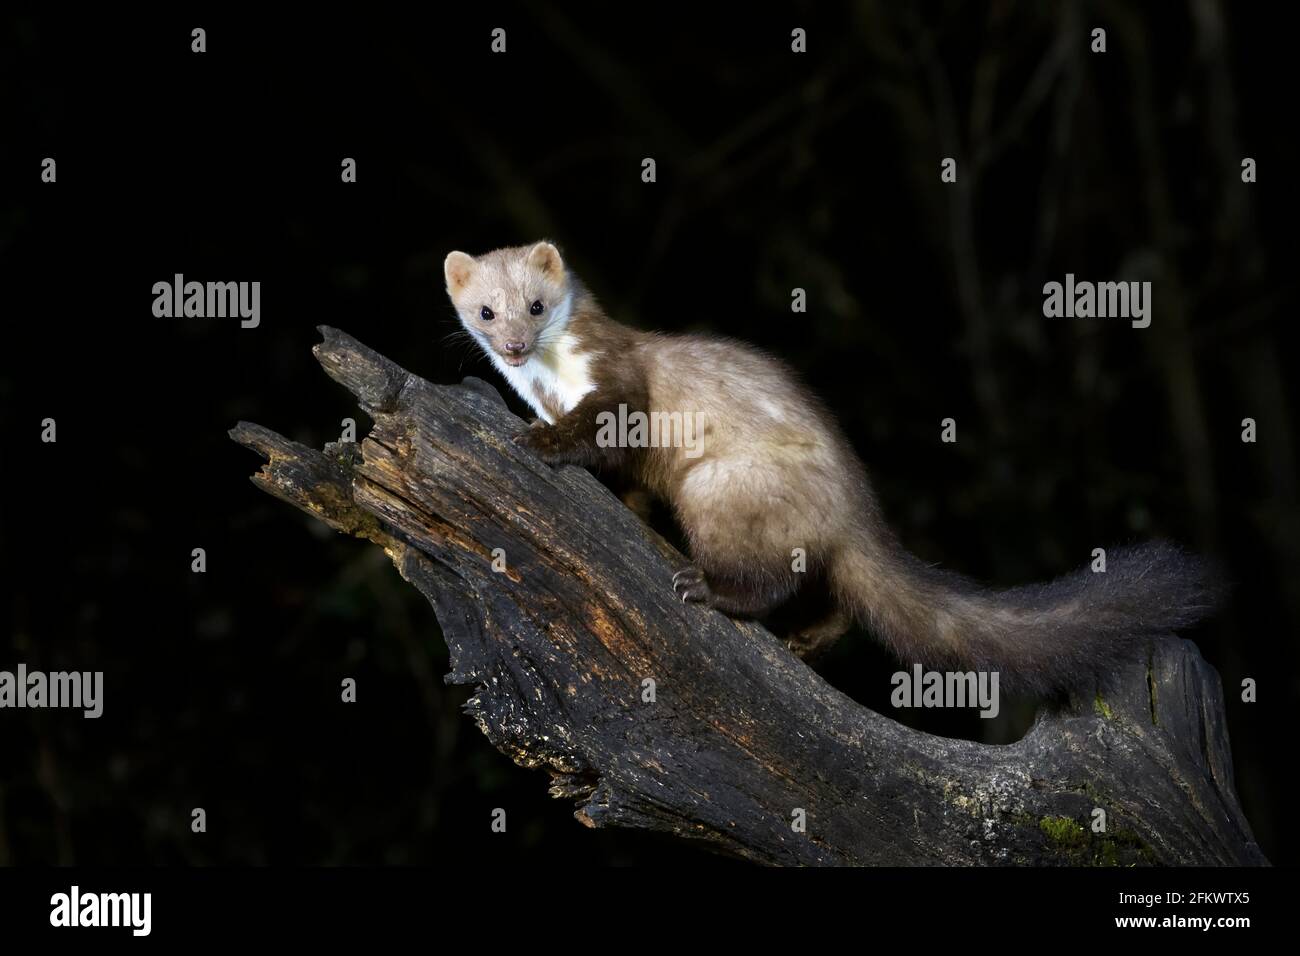 Martre de hêtre ou martre de pierre (Martes foina) sur une branche de bois la nuit, regardant la caméra, pays-Bas. Banque D'Images